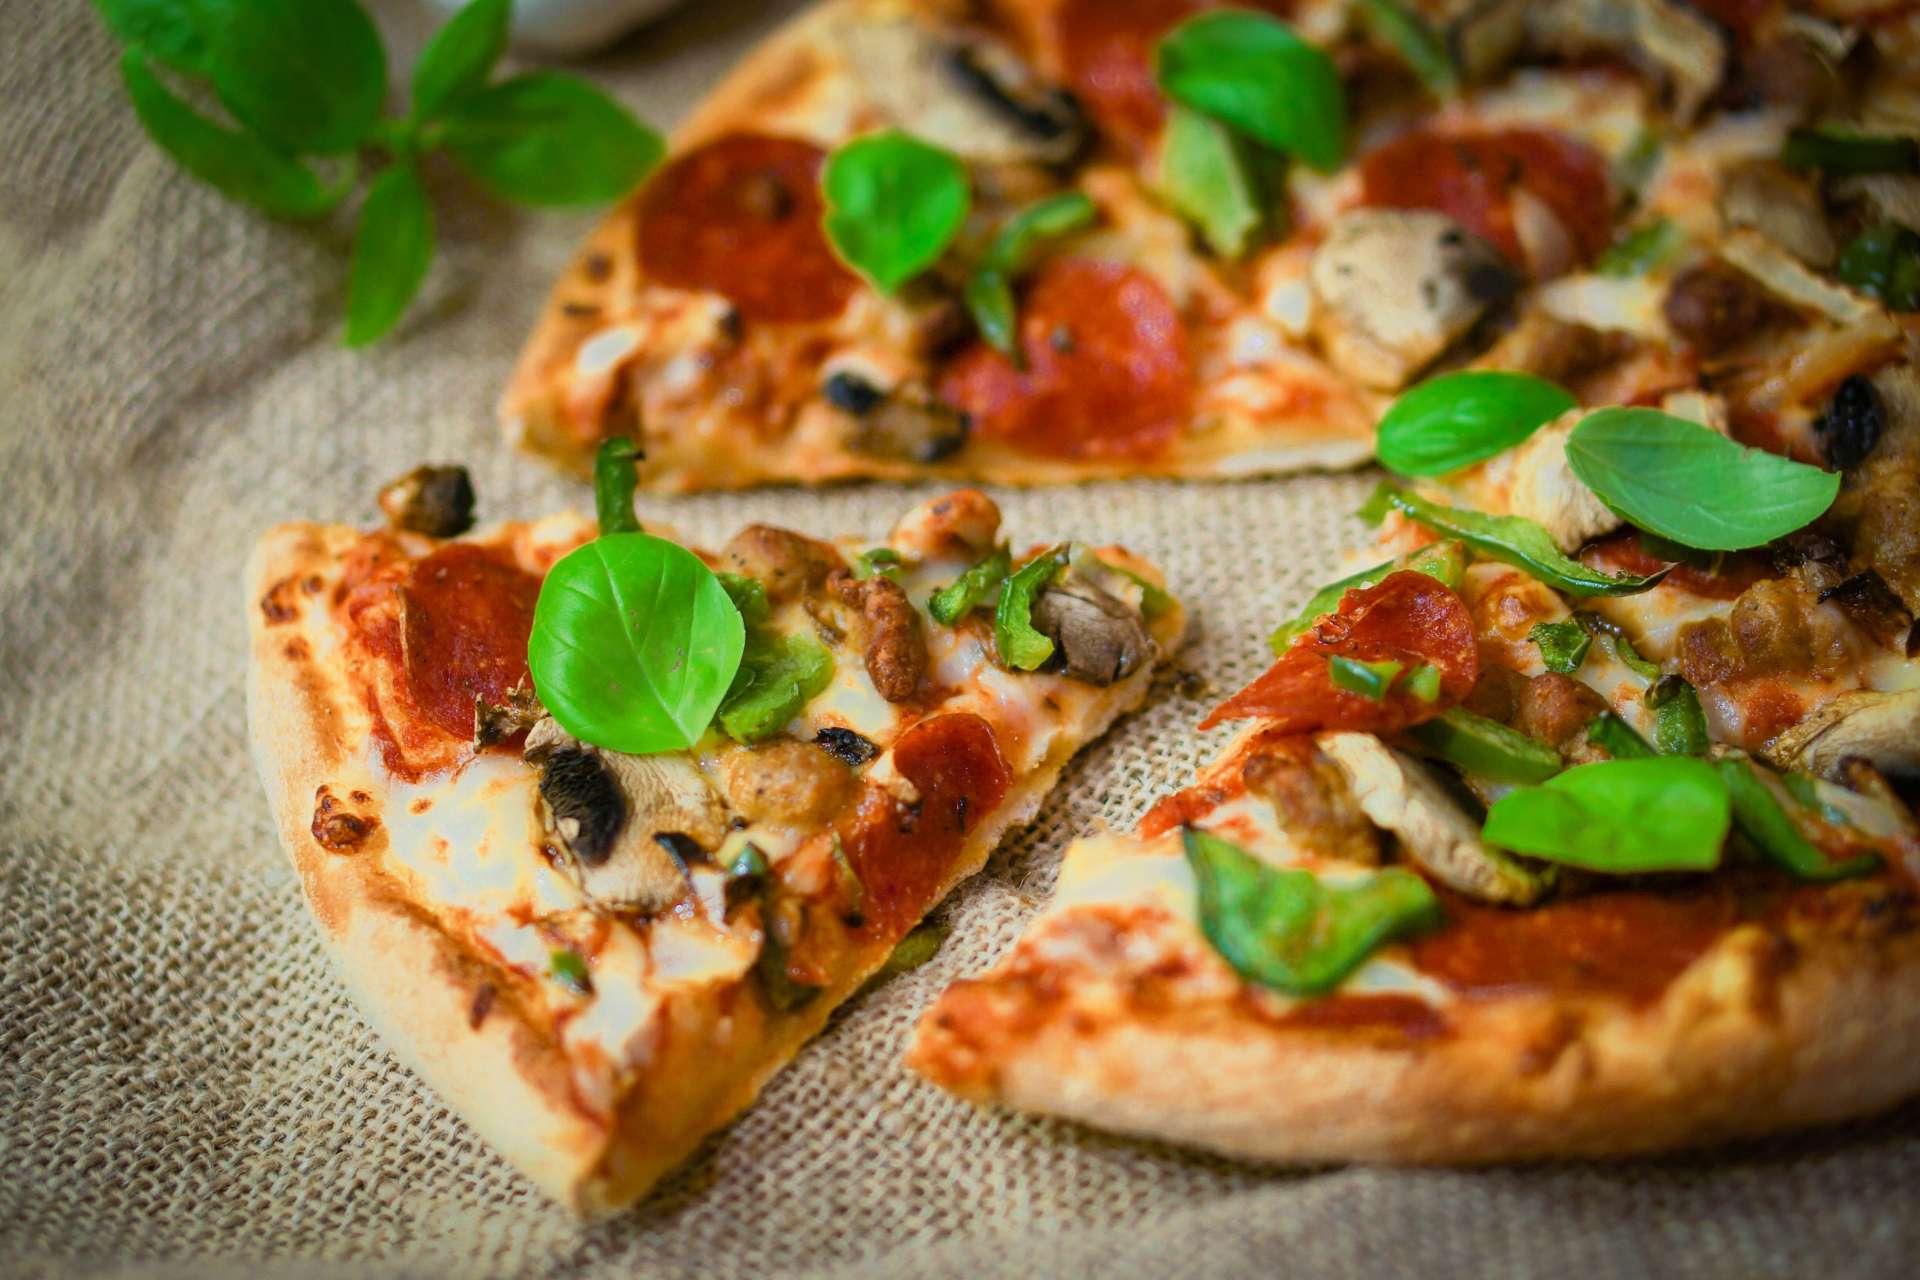 La pizza come altri alimenti a base di farine raffinate è uno degli alimenti da evitare per il reflusso